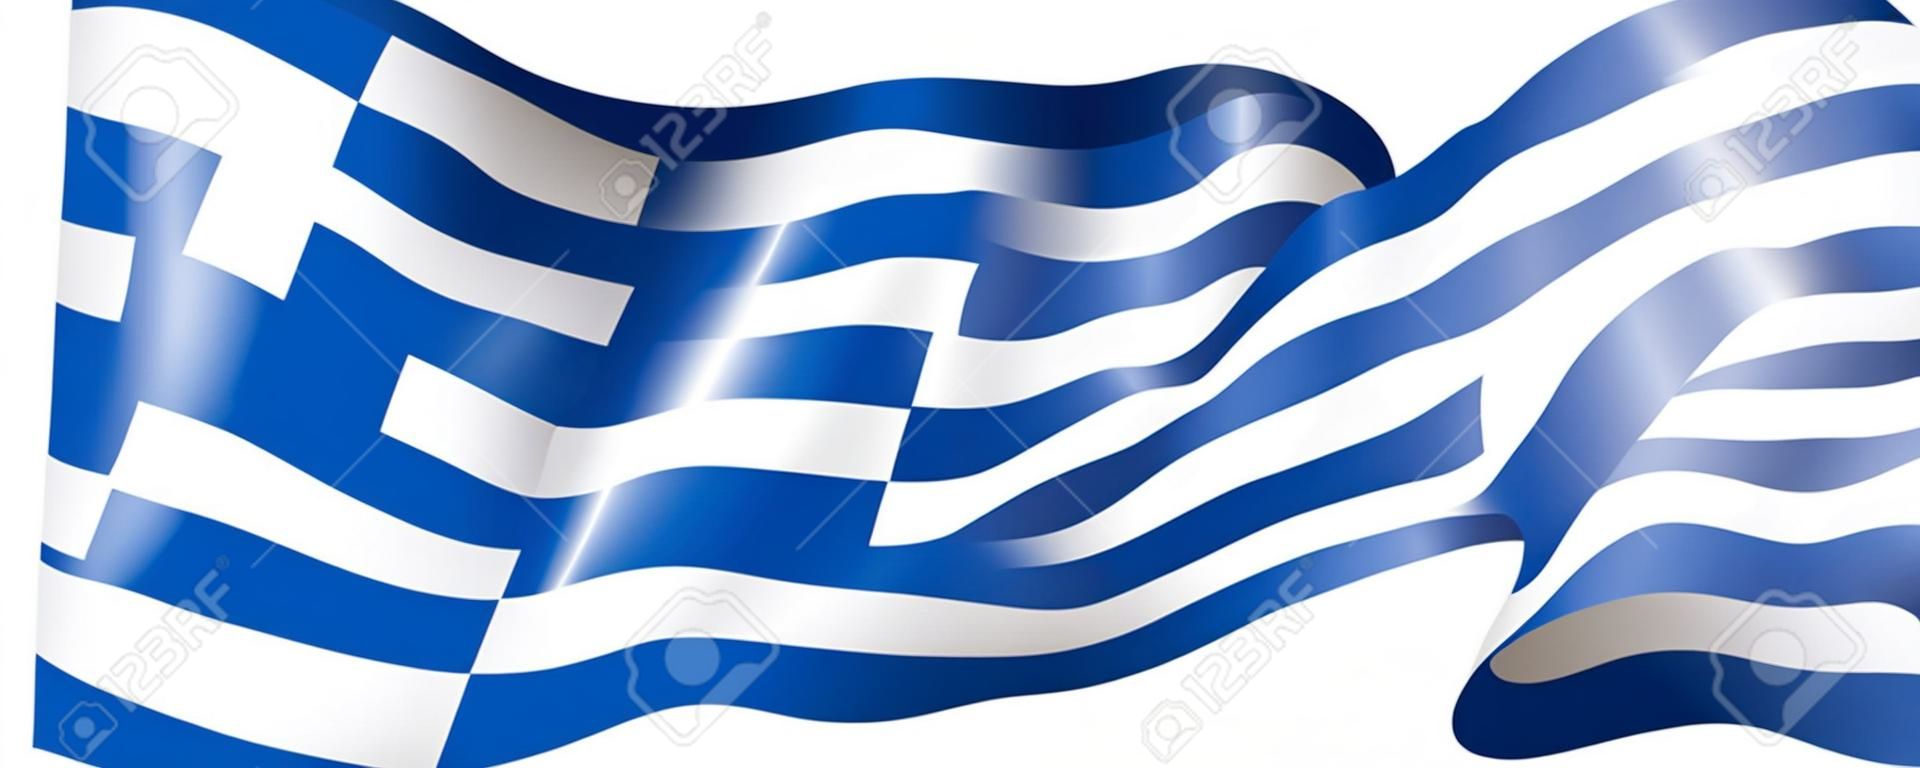 Flaga Grecji, ilustracja wektorowa na białym tle